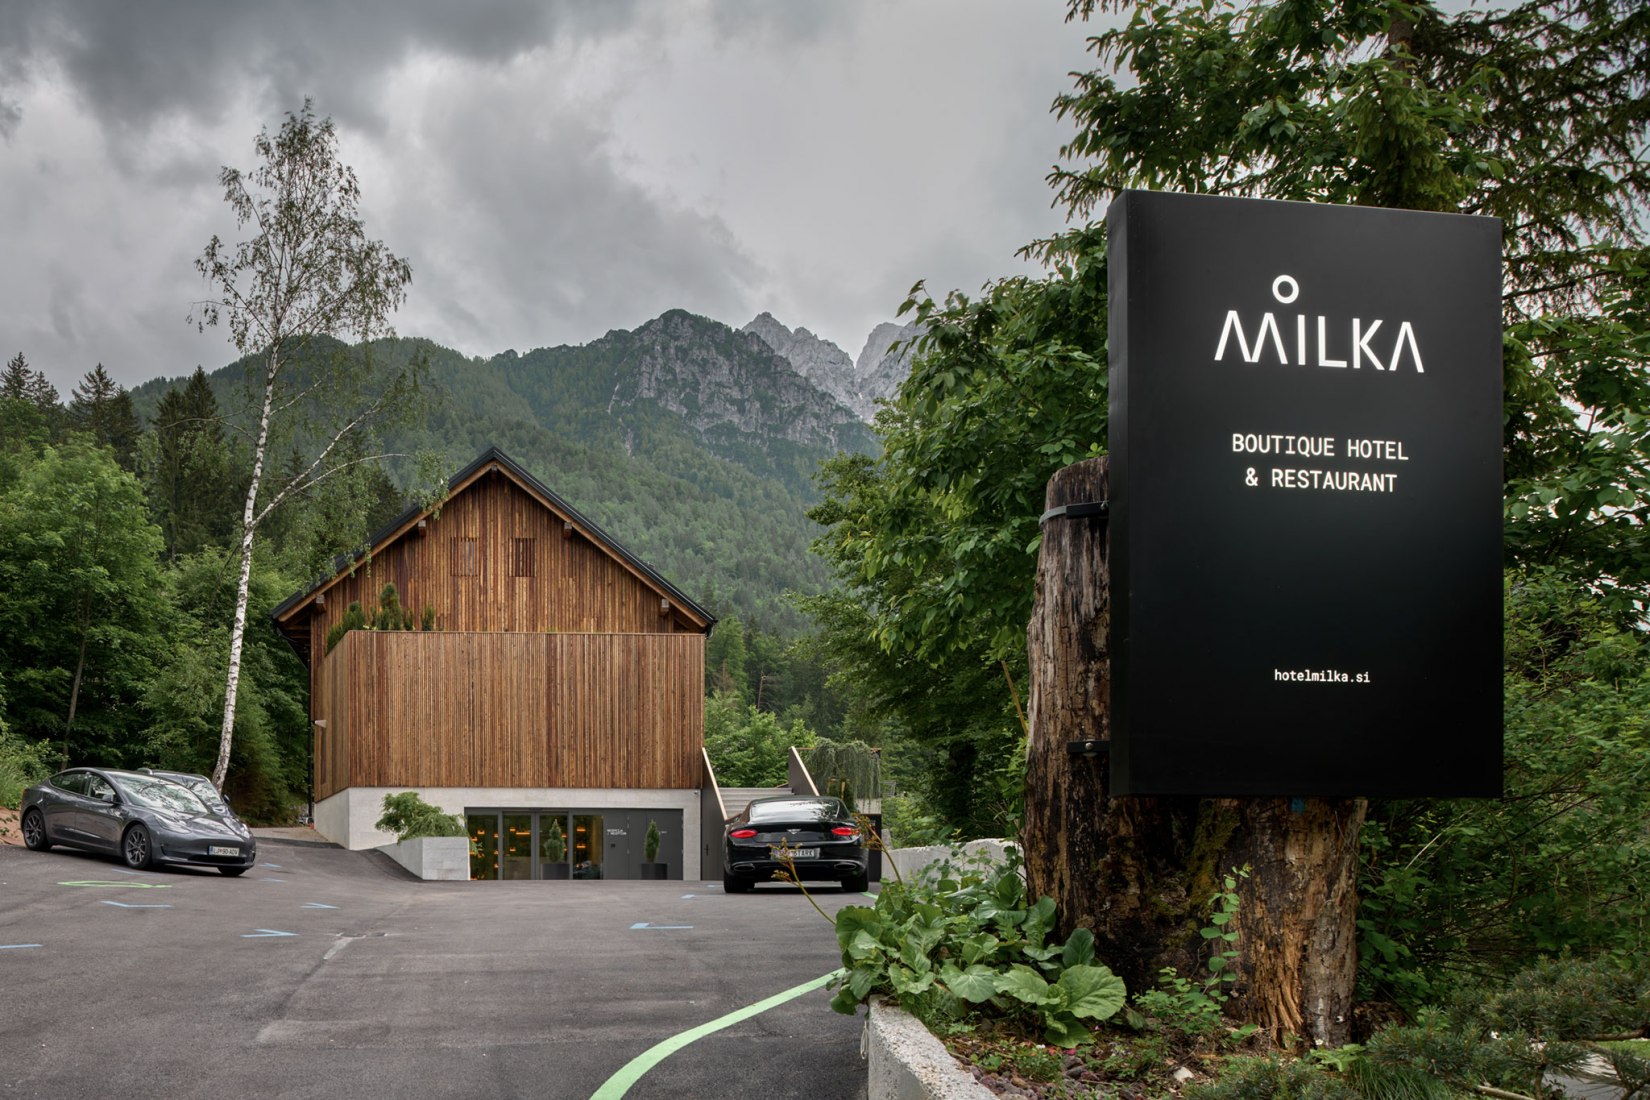 Milka Boutique Hotel y Restaurante por Gartner Architects. Fotografía por Claudio Parada Nunes.